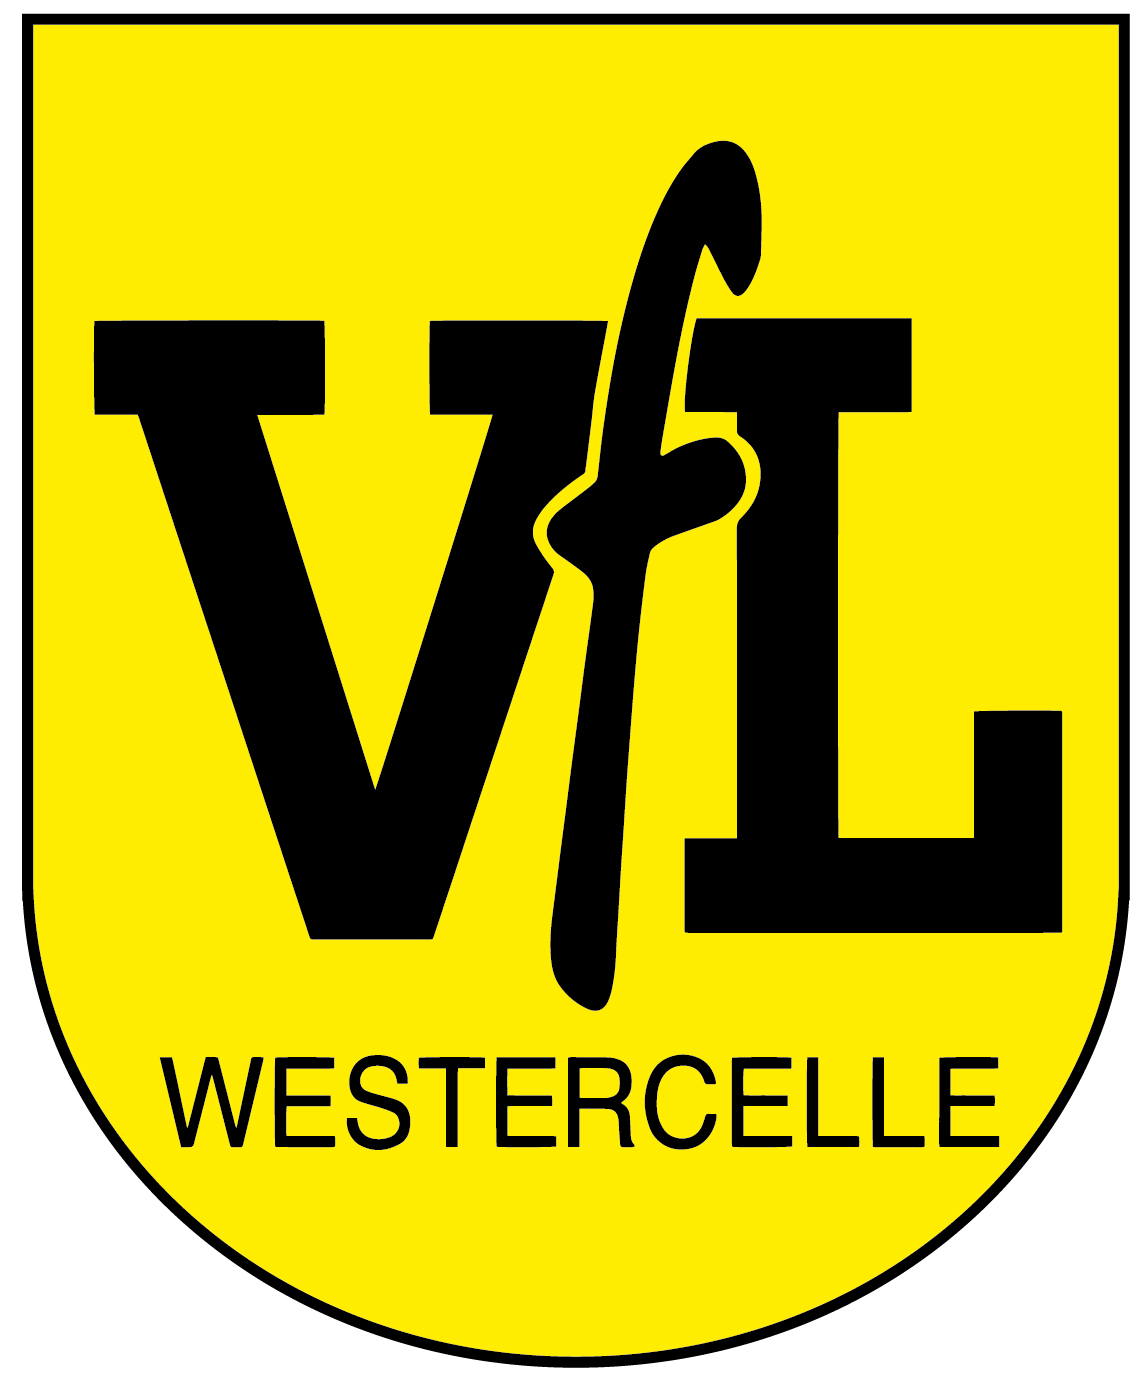 VfL Westercelle Logo